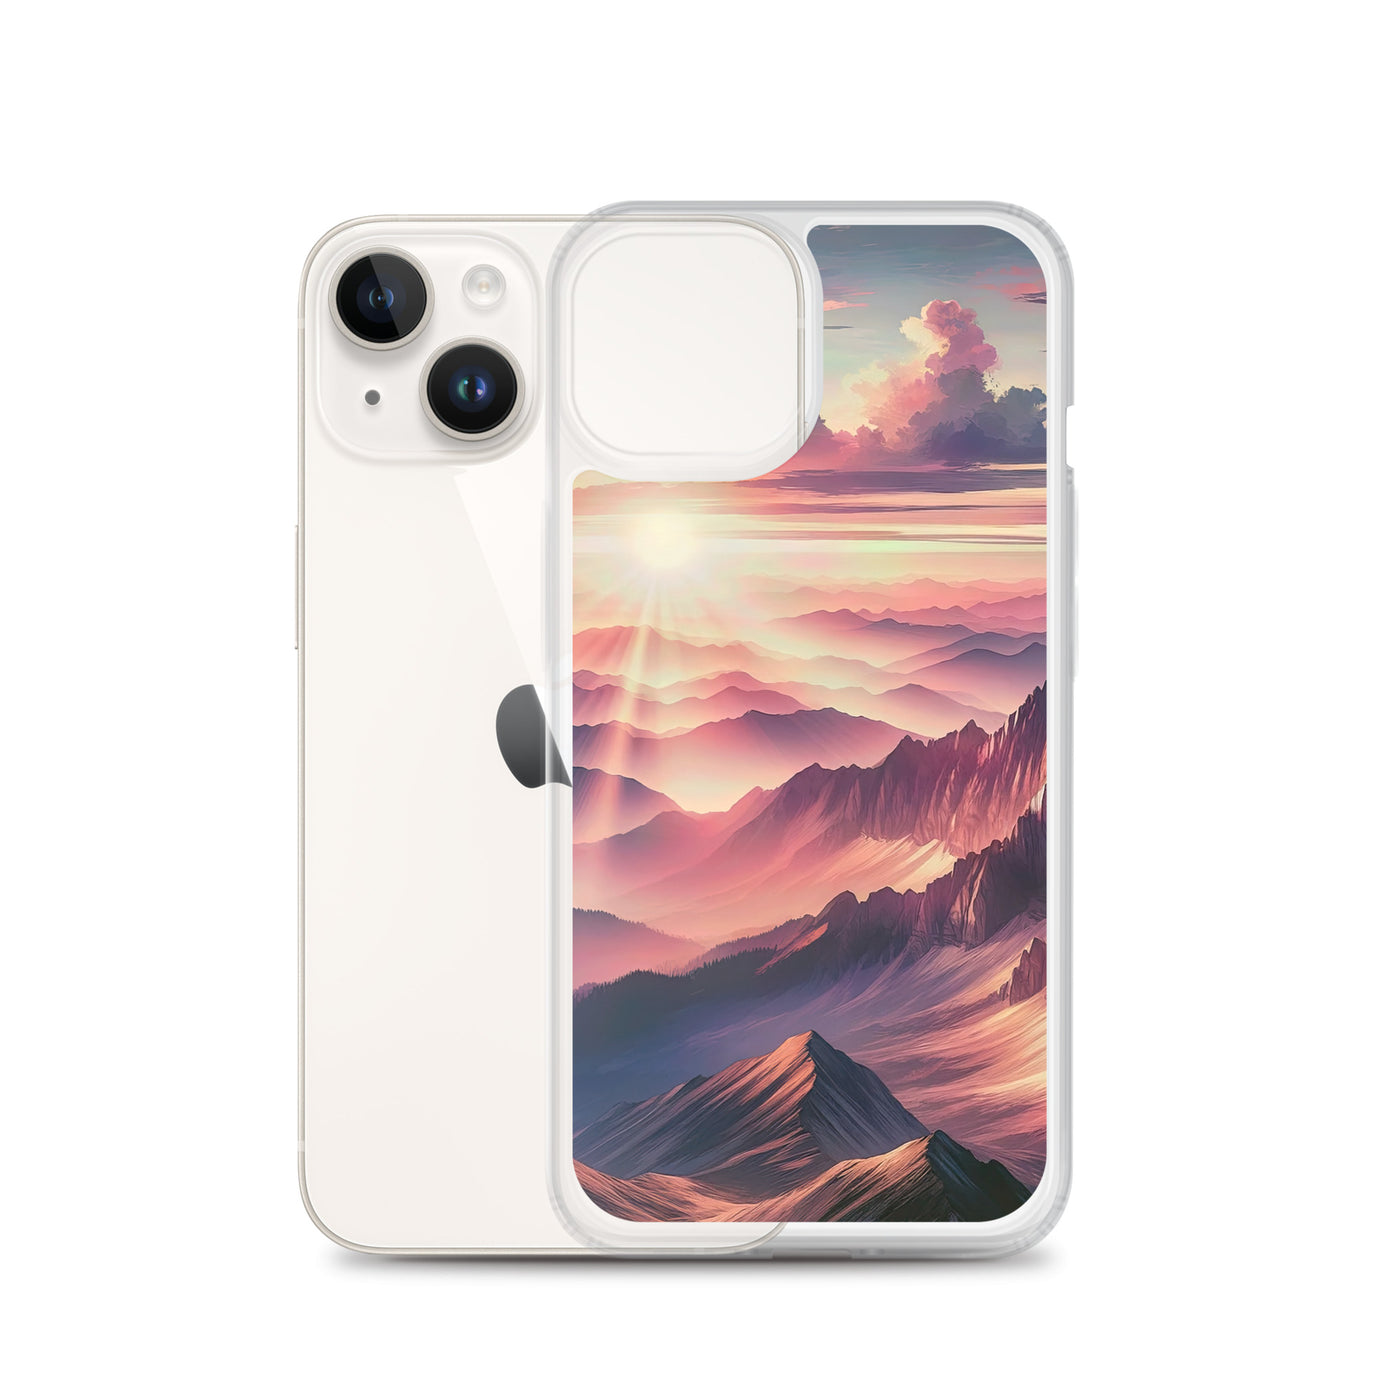 Schöne Berge bei Sonnenaufgang: Malerei in Pastelltönen - iPhone Schutzhülle (durchsichtig) berge xxx yyy zzz